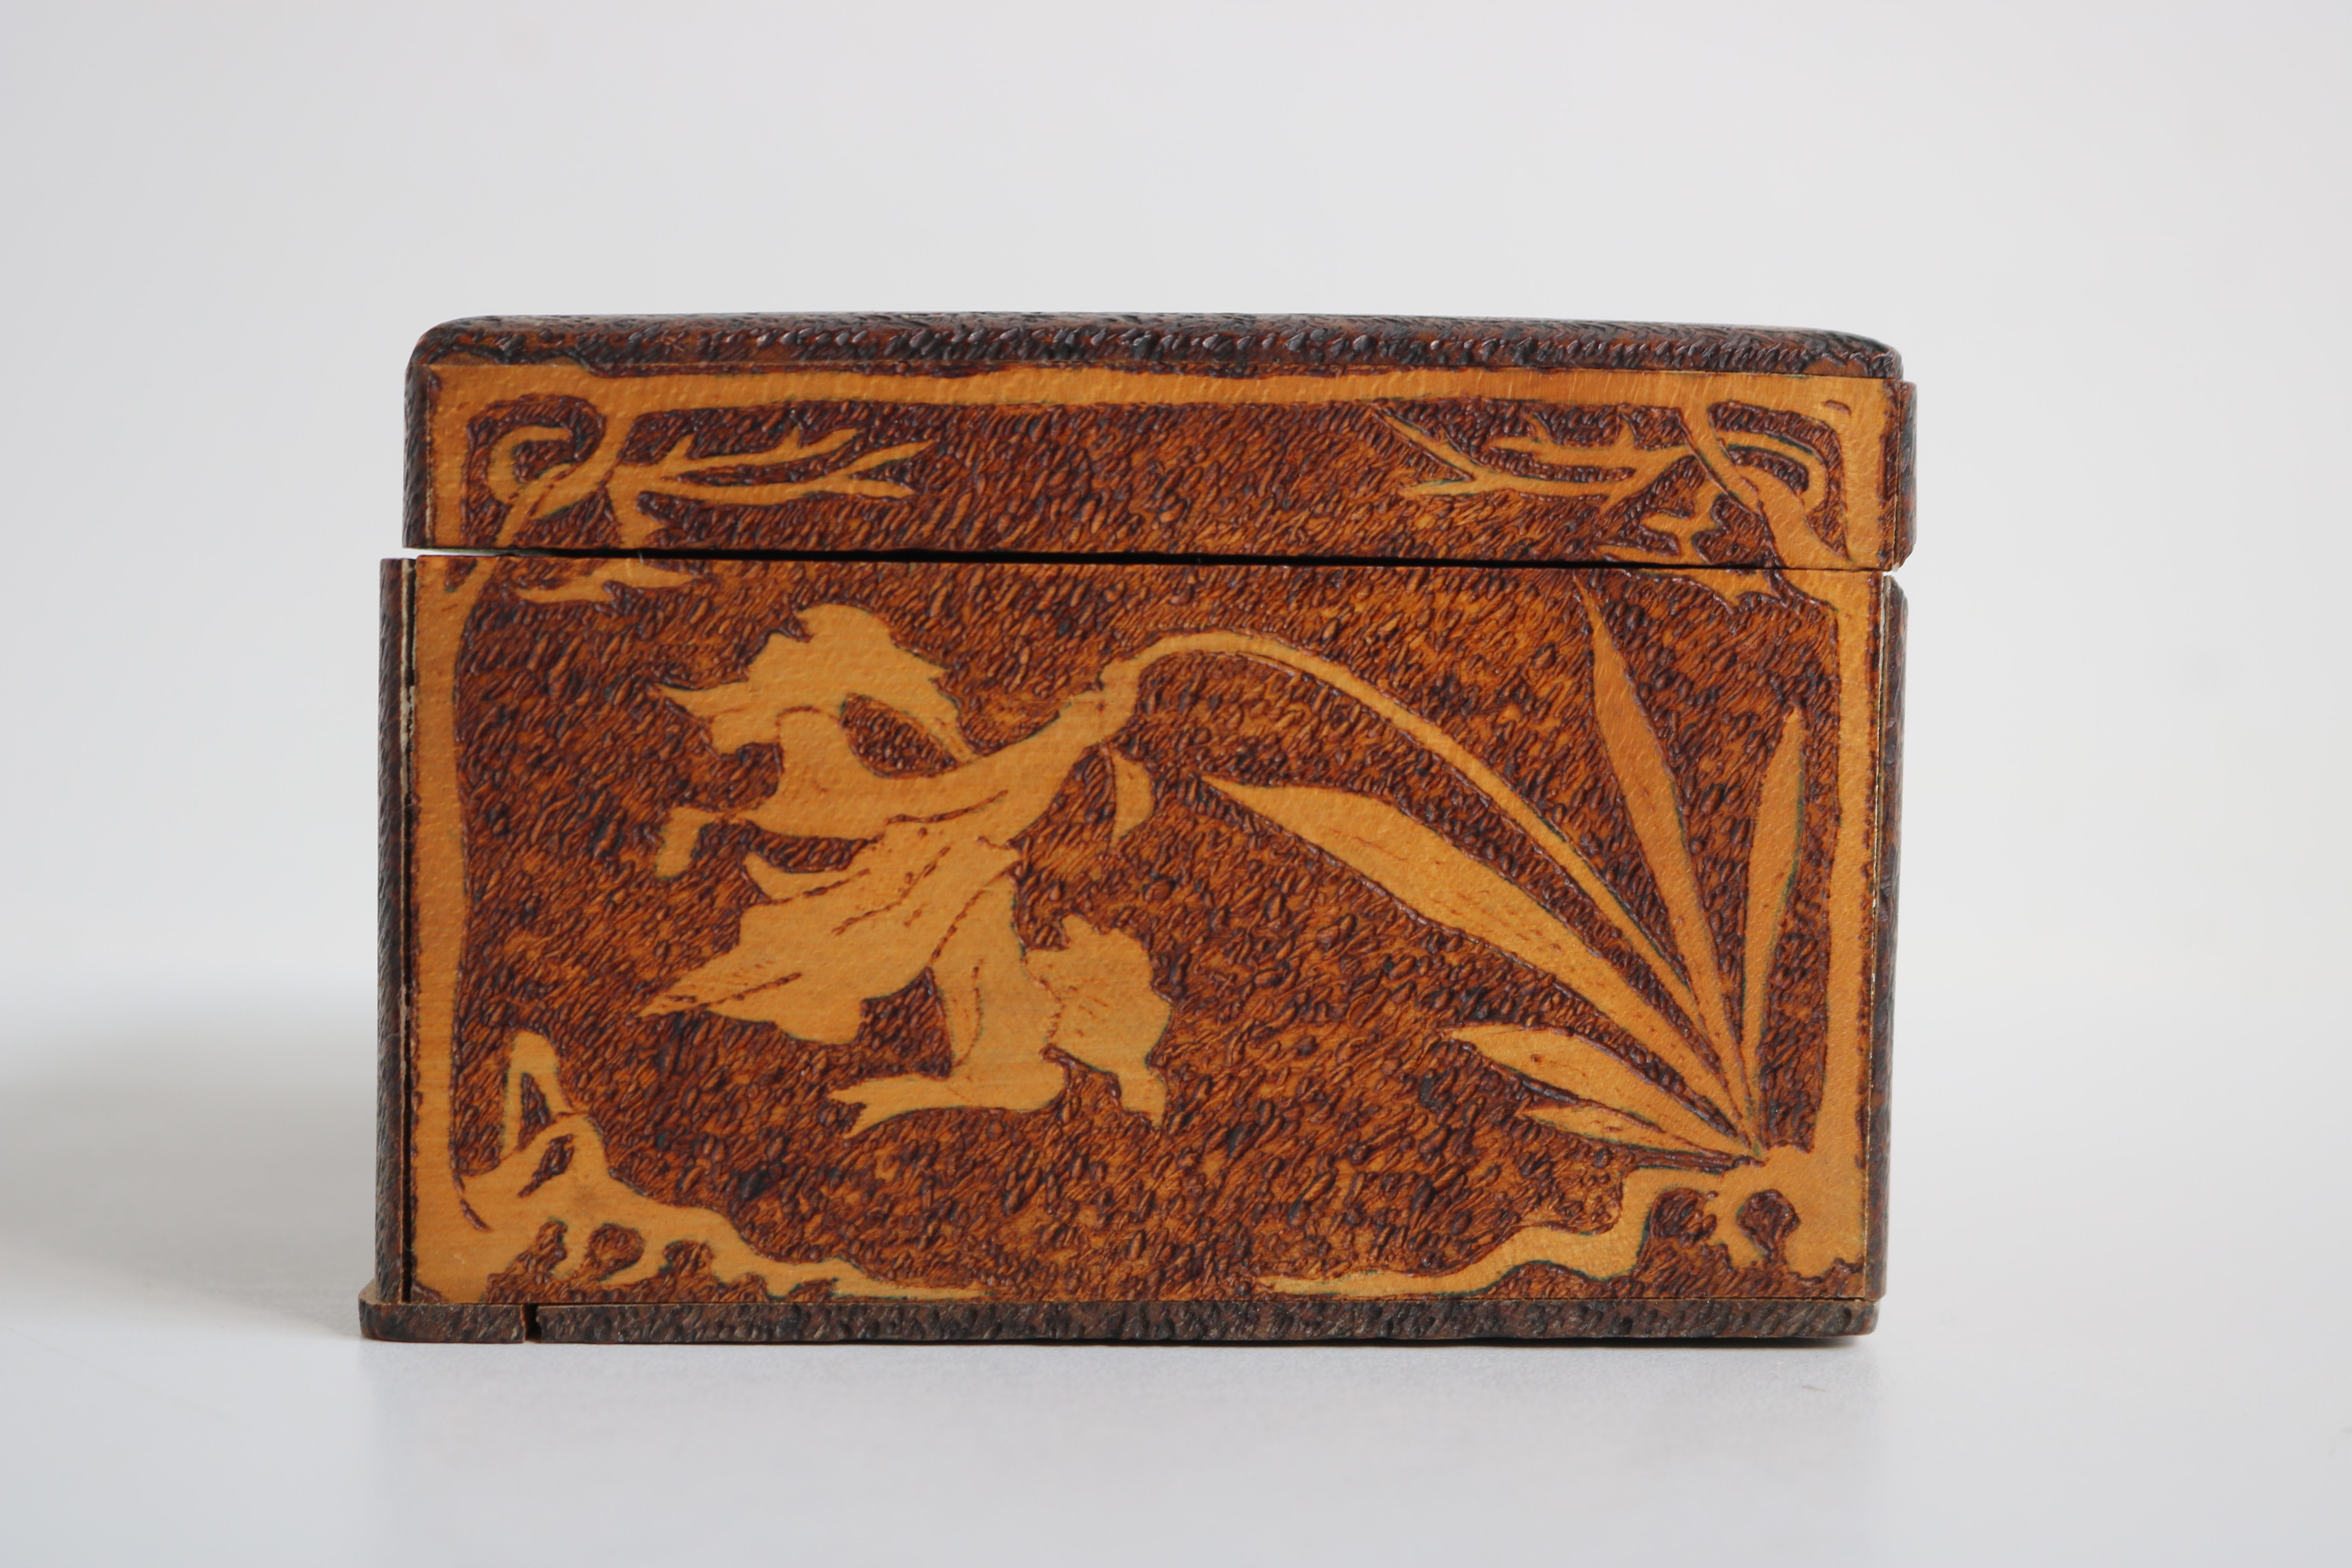 Hand-Carved Antique French Art Nouveau Jewelry Box 1906 Carved Wood Floral Jugendstil Velvet